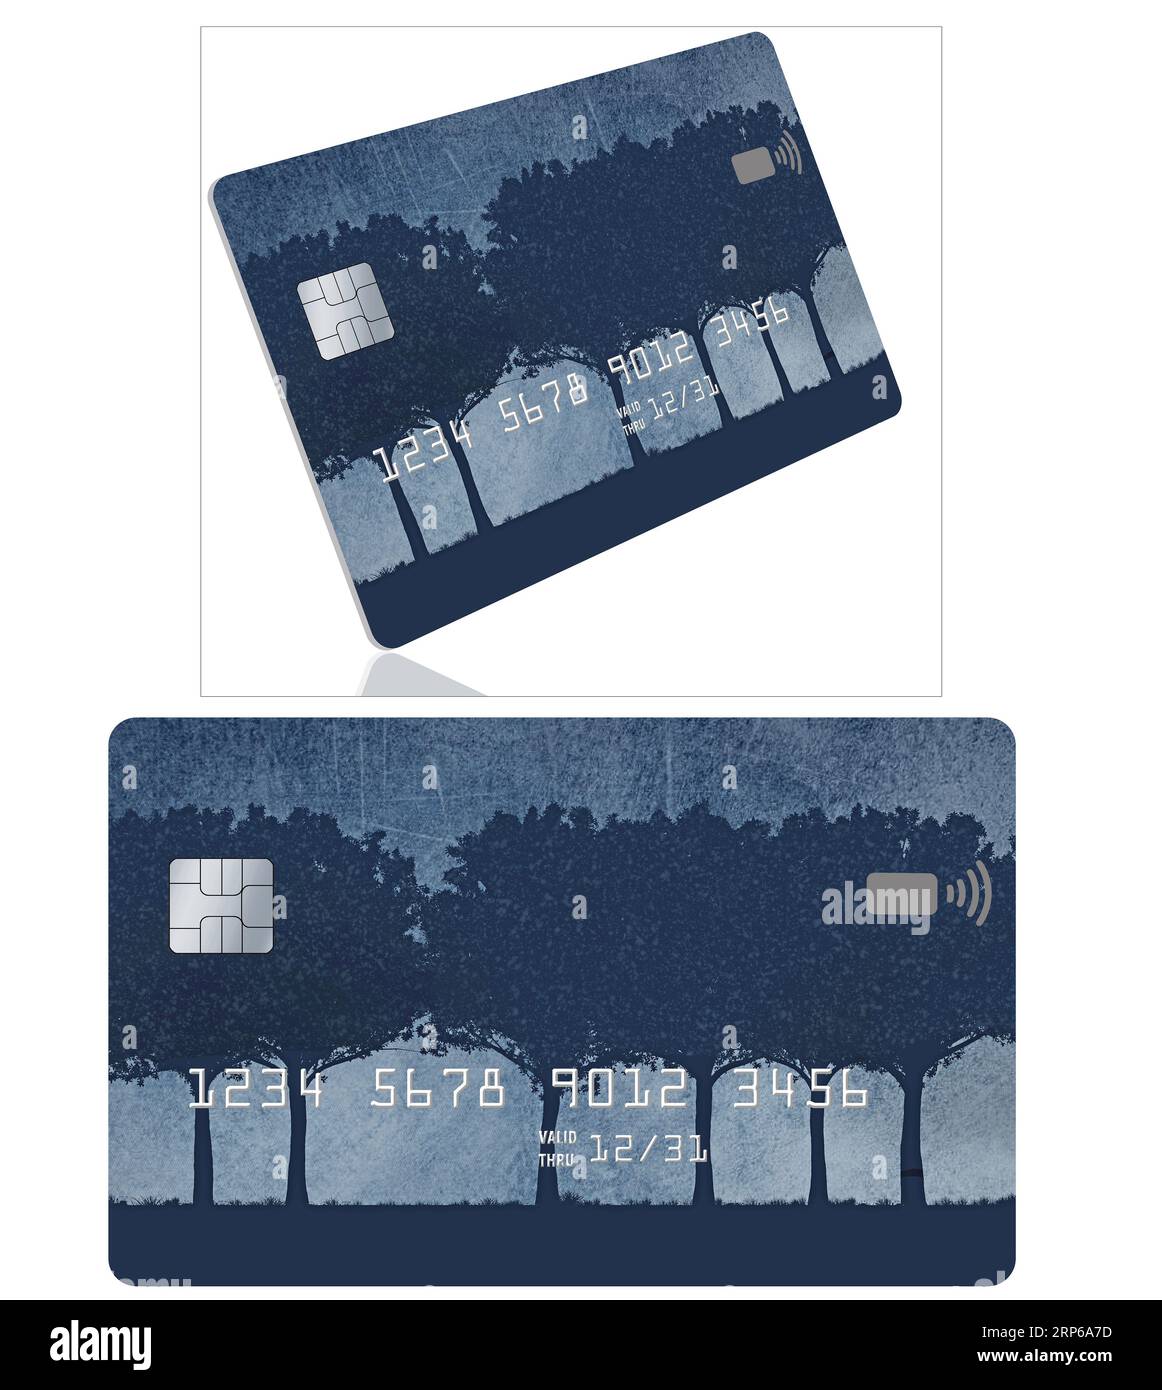 Des cartes de crédit génériques fictives sont vues qui ont brume, grunge et une rangée d'arbres dans le desitn de cette illustration en 3D. Banque D'Images